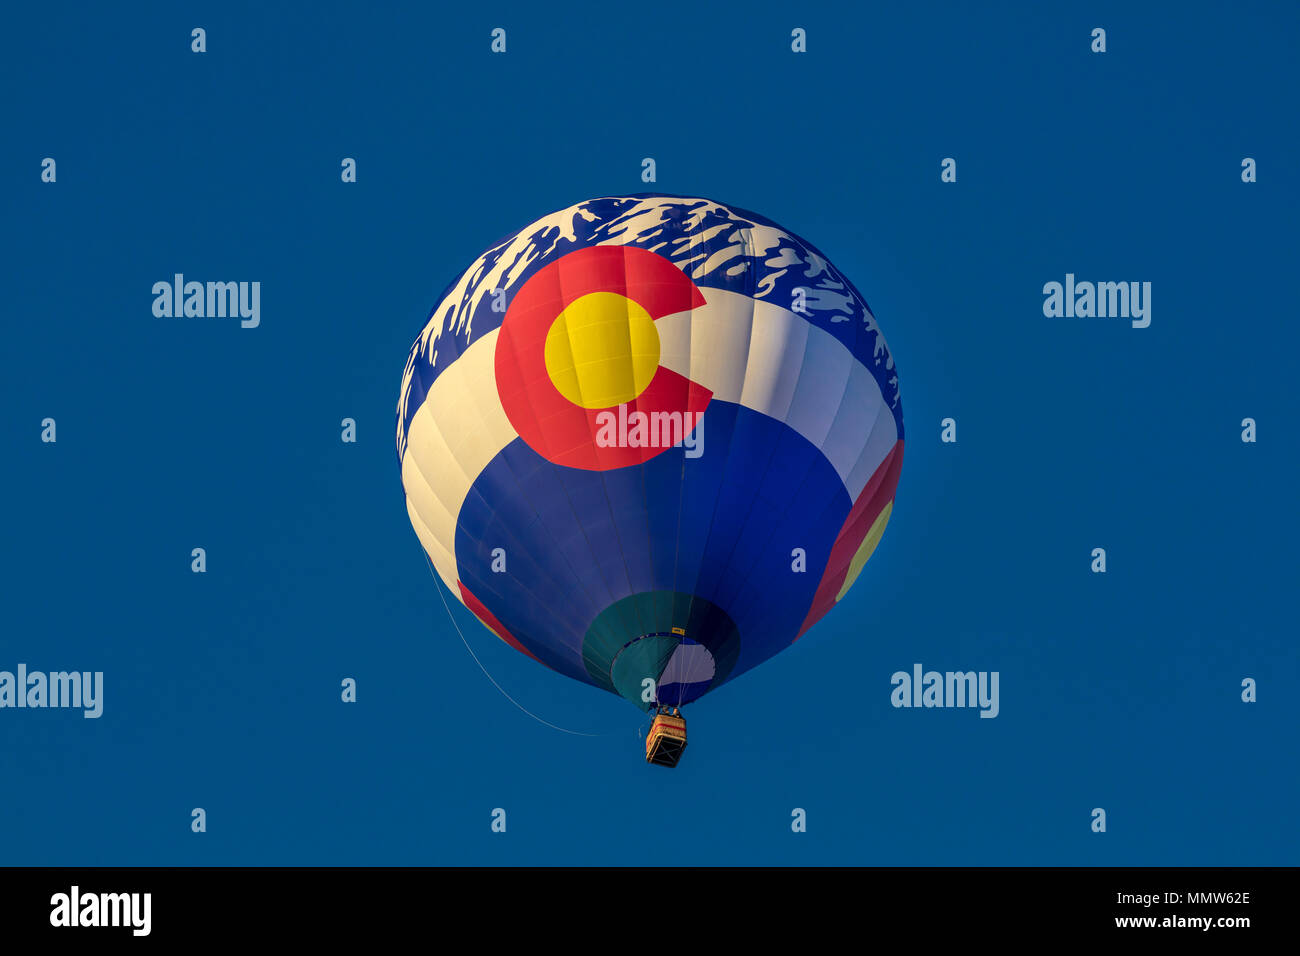 7 OCTOBRE 2017 - Albuquerque, Nouveau Mexique - des Montgolfières à l'Albuquerque Balloon Fiesta, montre Drapeau Colorado Banque D'Images